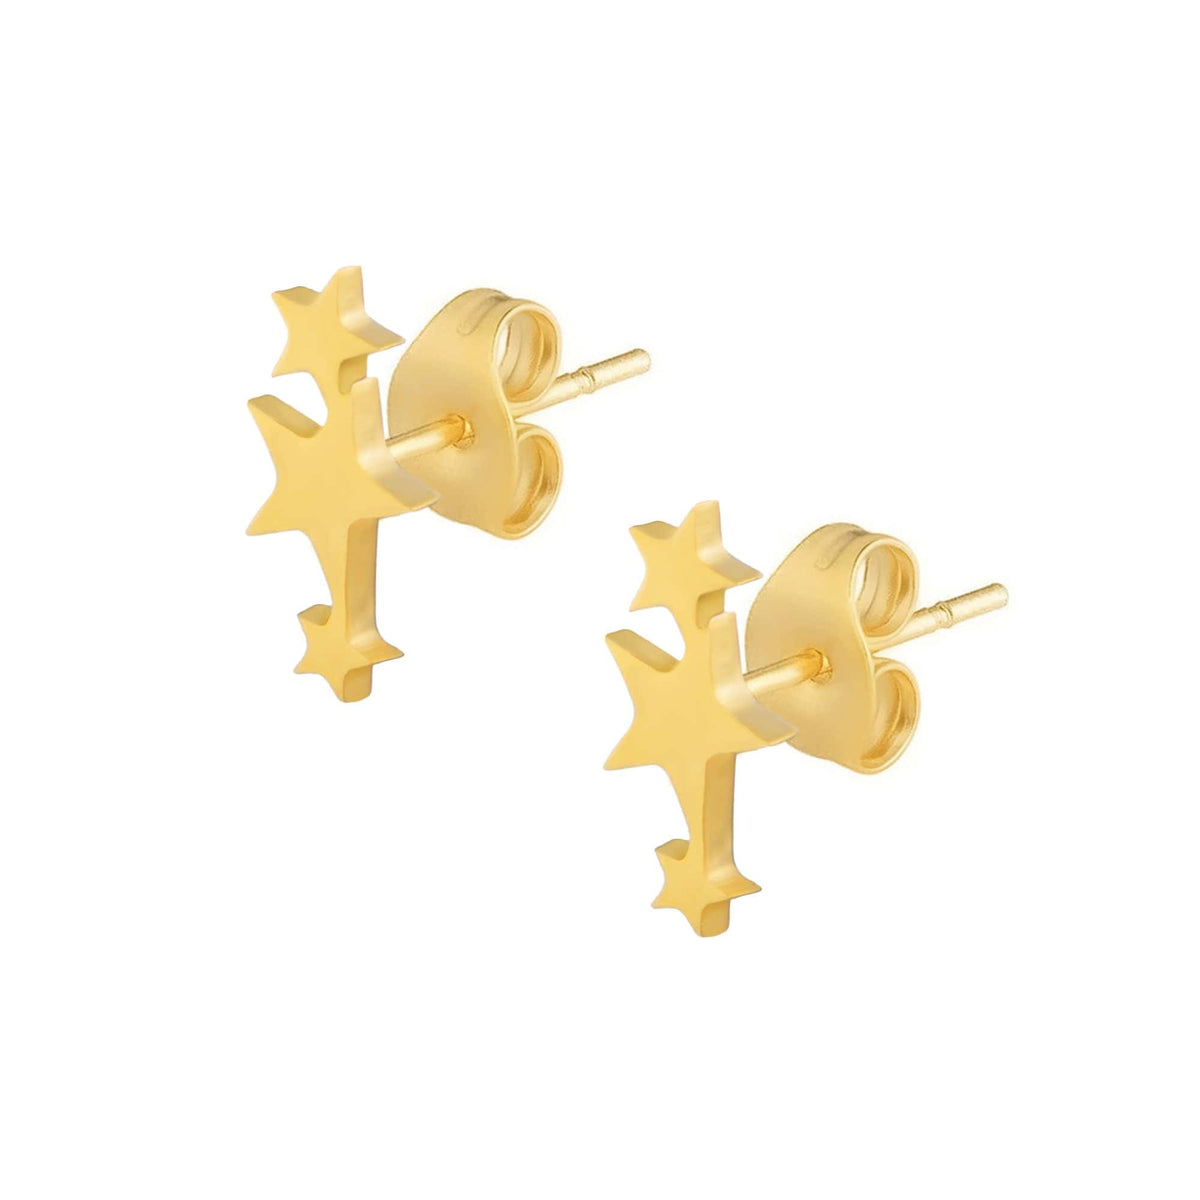 BohoMoon Stainless Steel Triple Star Stud Earrings Gold